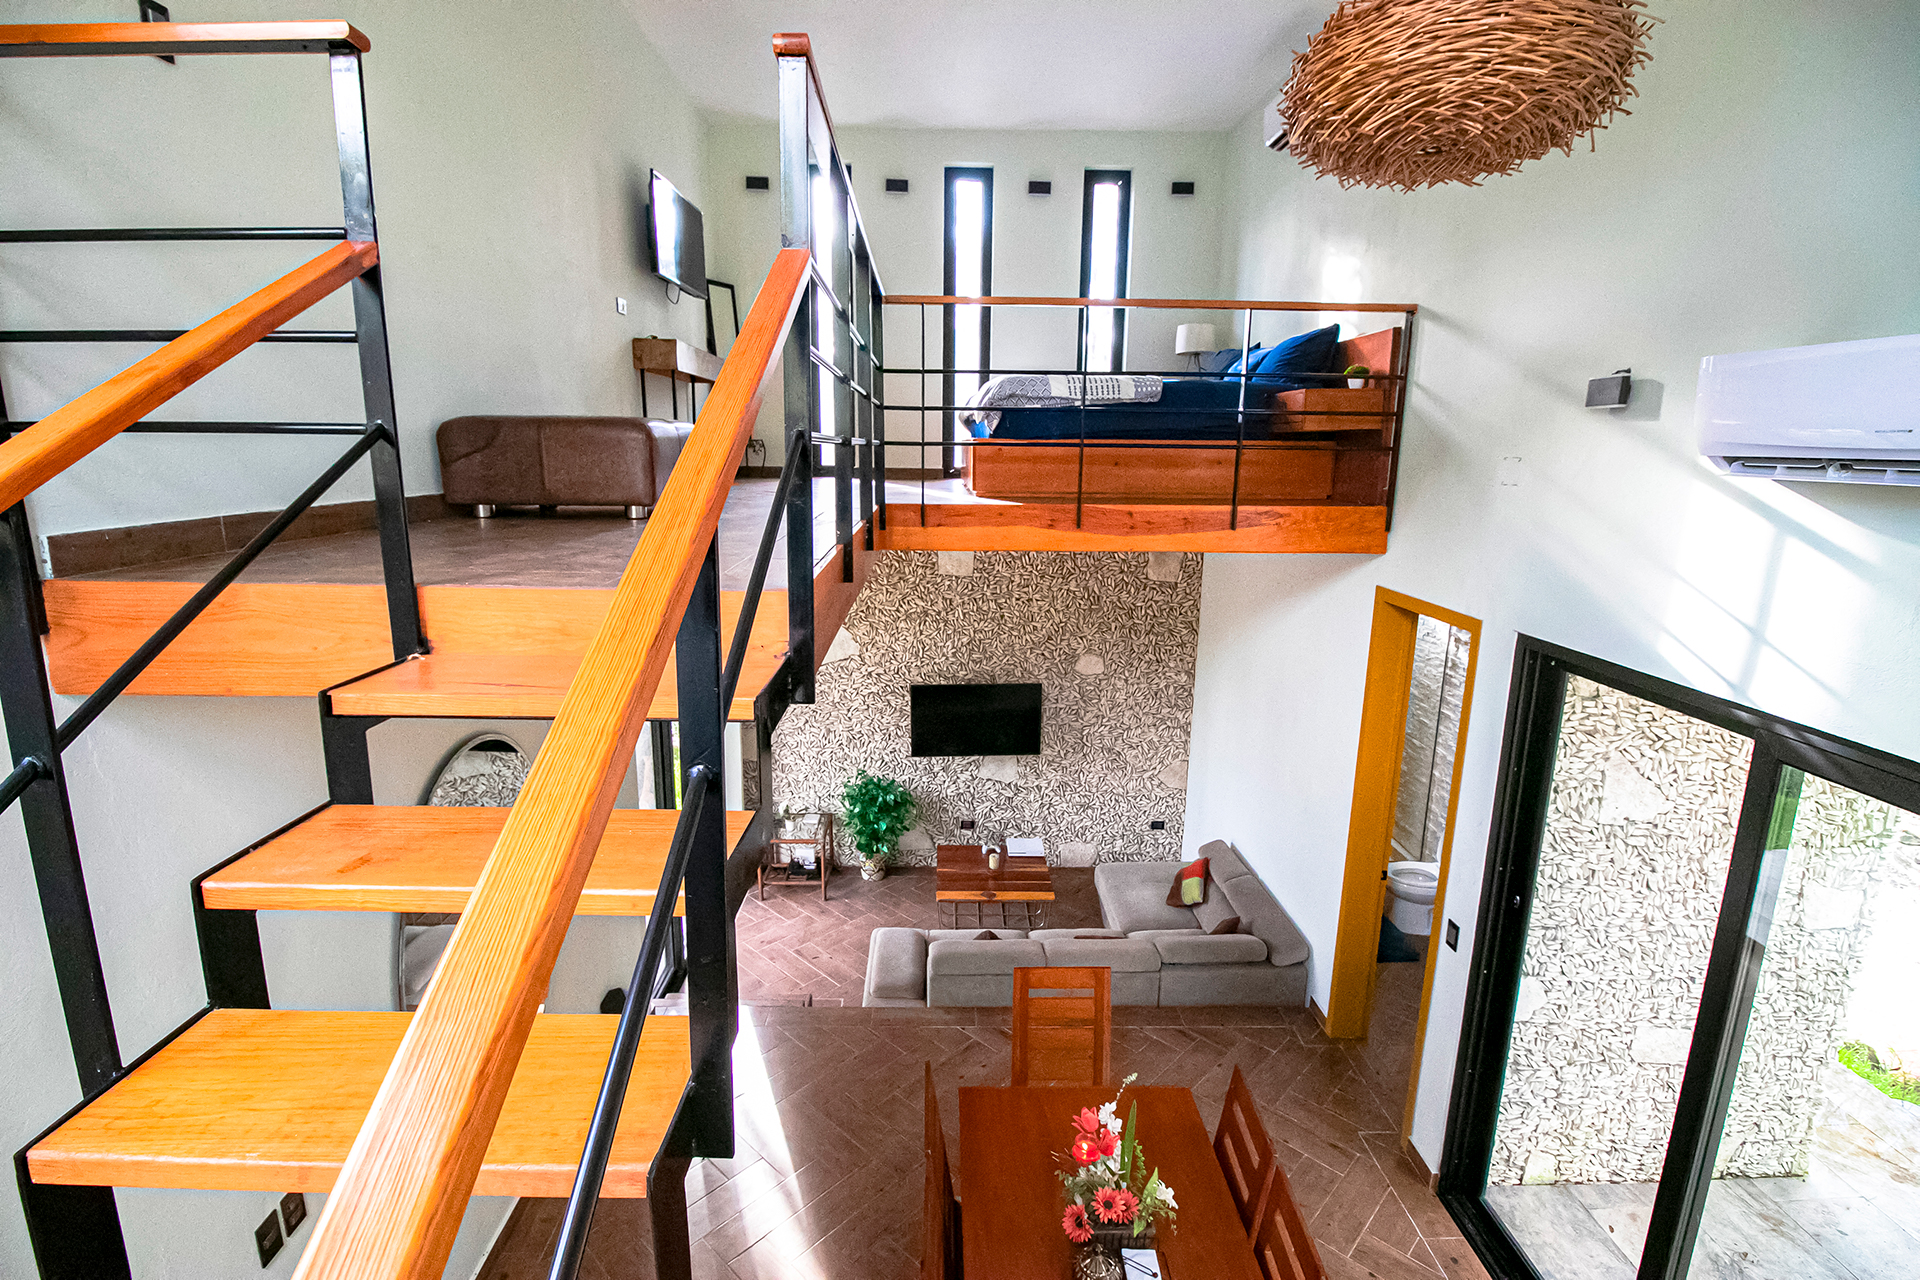 Villa Violeta, lugar de hospedaje en Cozumel, escaleras, habitación, cama king size, tv, Cozumel